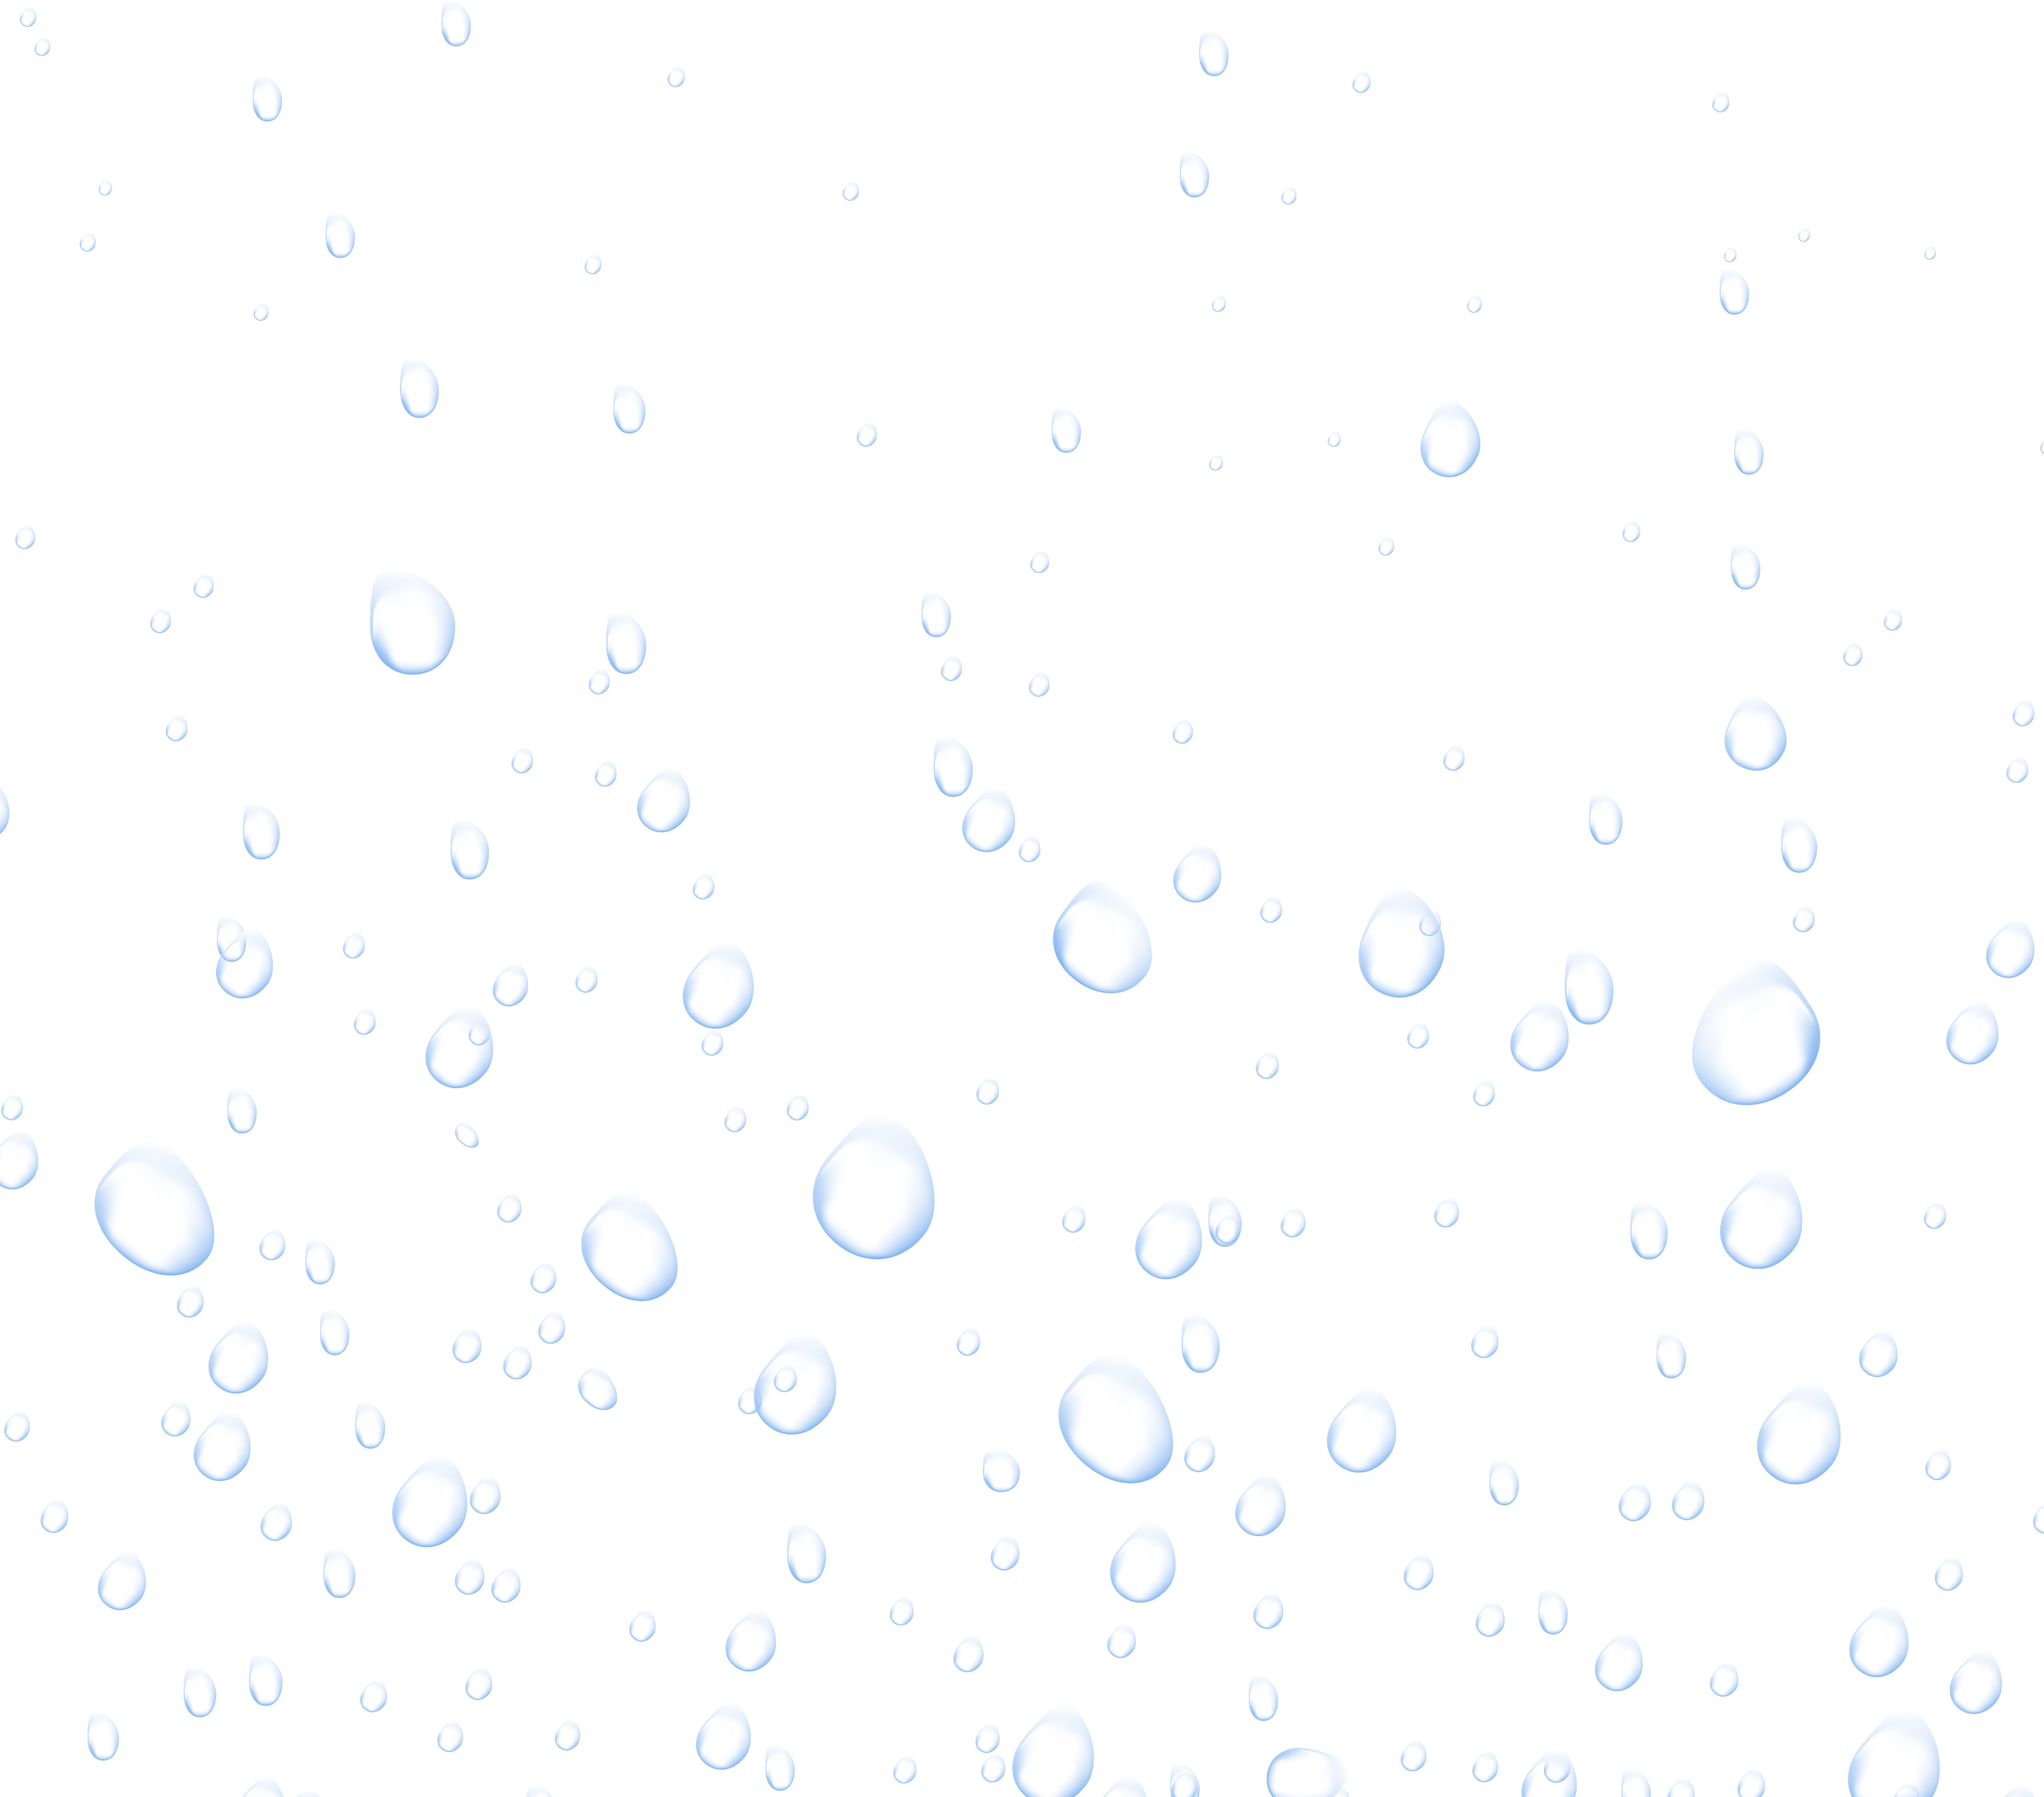 Water drops. Water fizzing bubbles